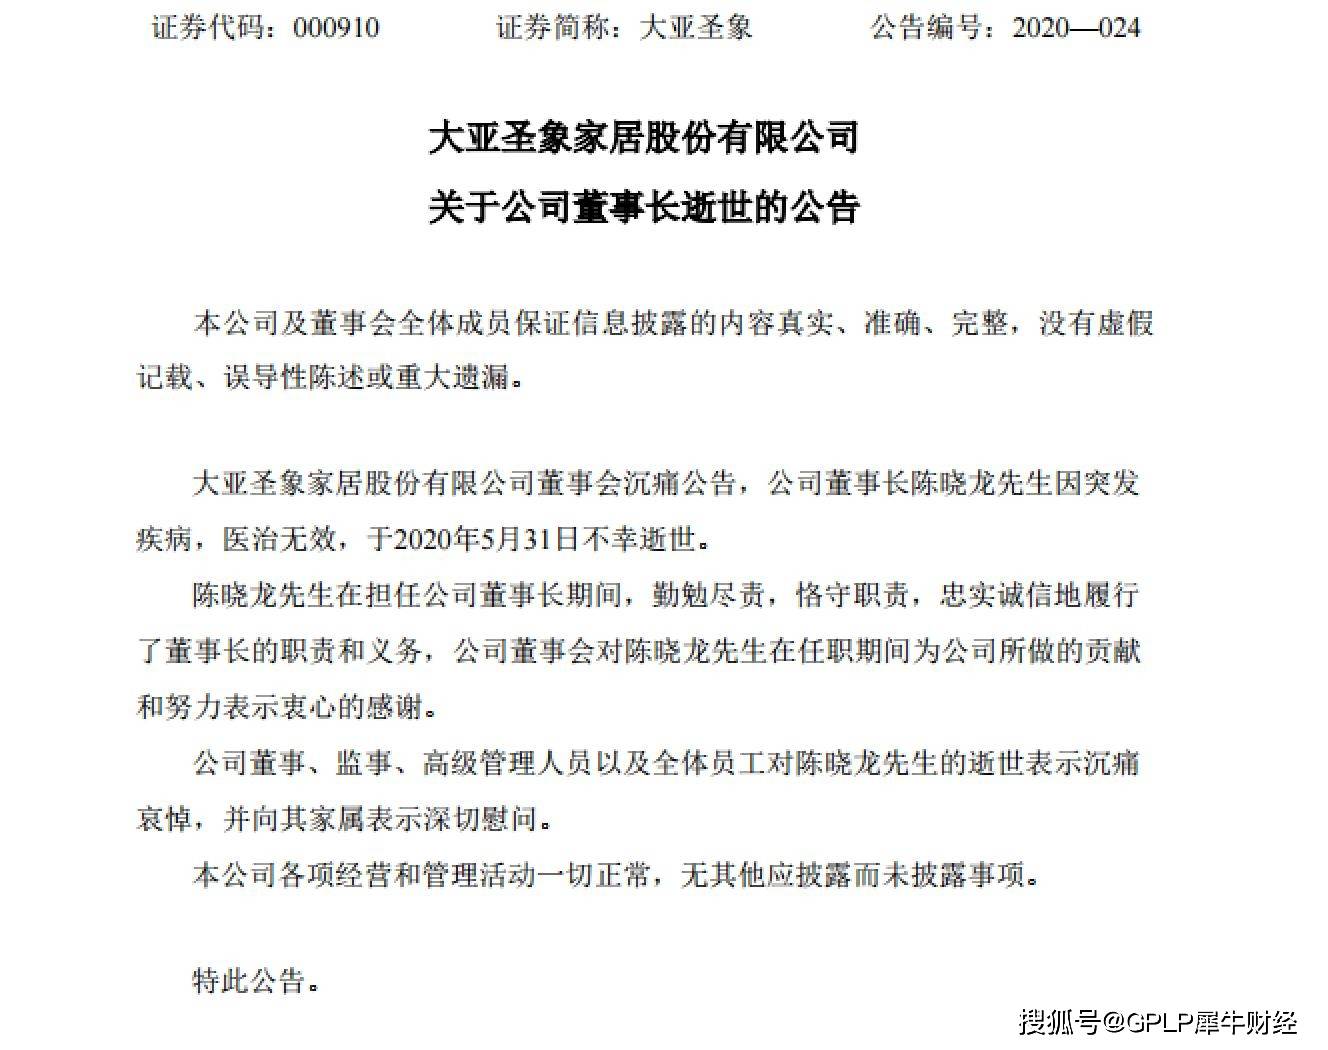 大亚圣象董事长陈晓龙因病去世最近5年公司净利润增速下滑 大亚科技